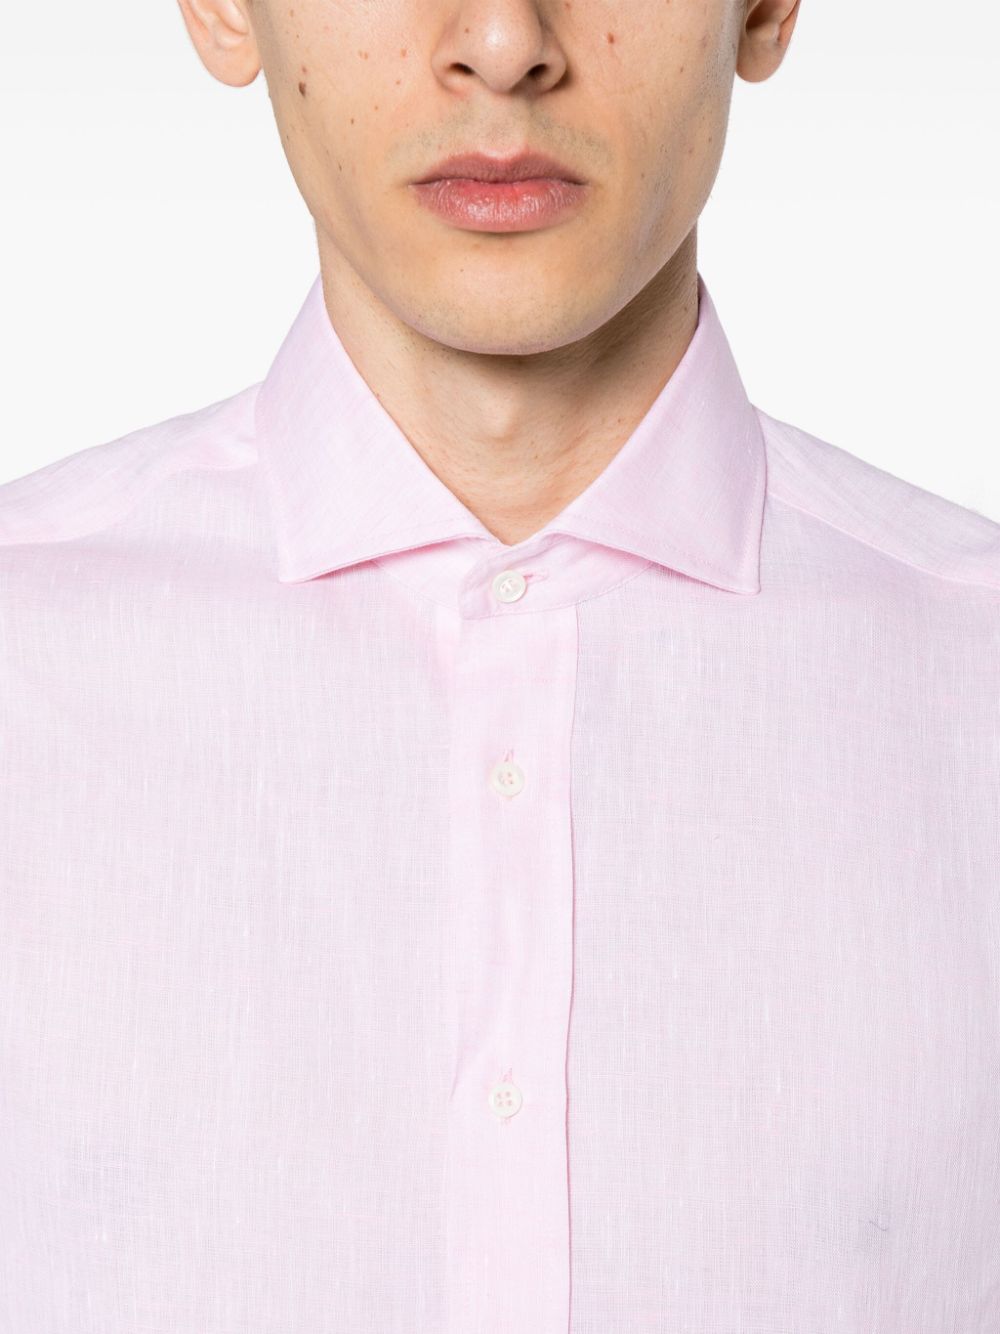 Brunello Cucinelli Shirts Pink